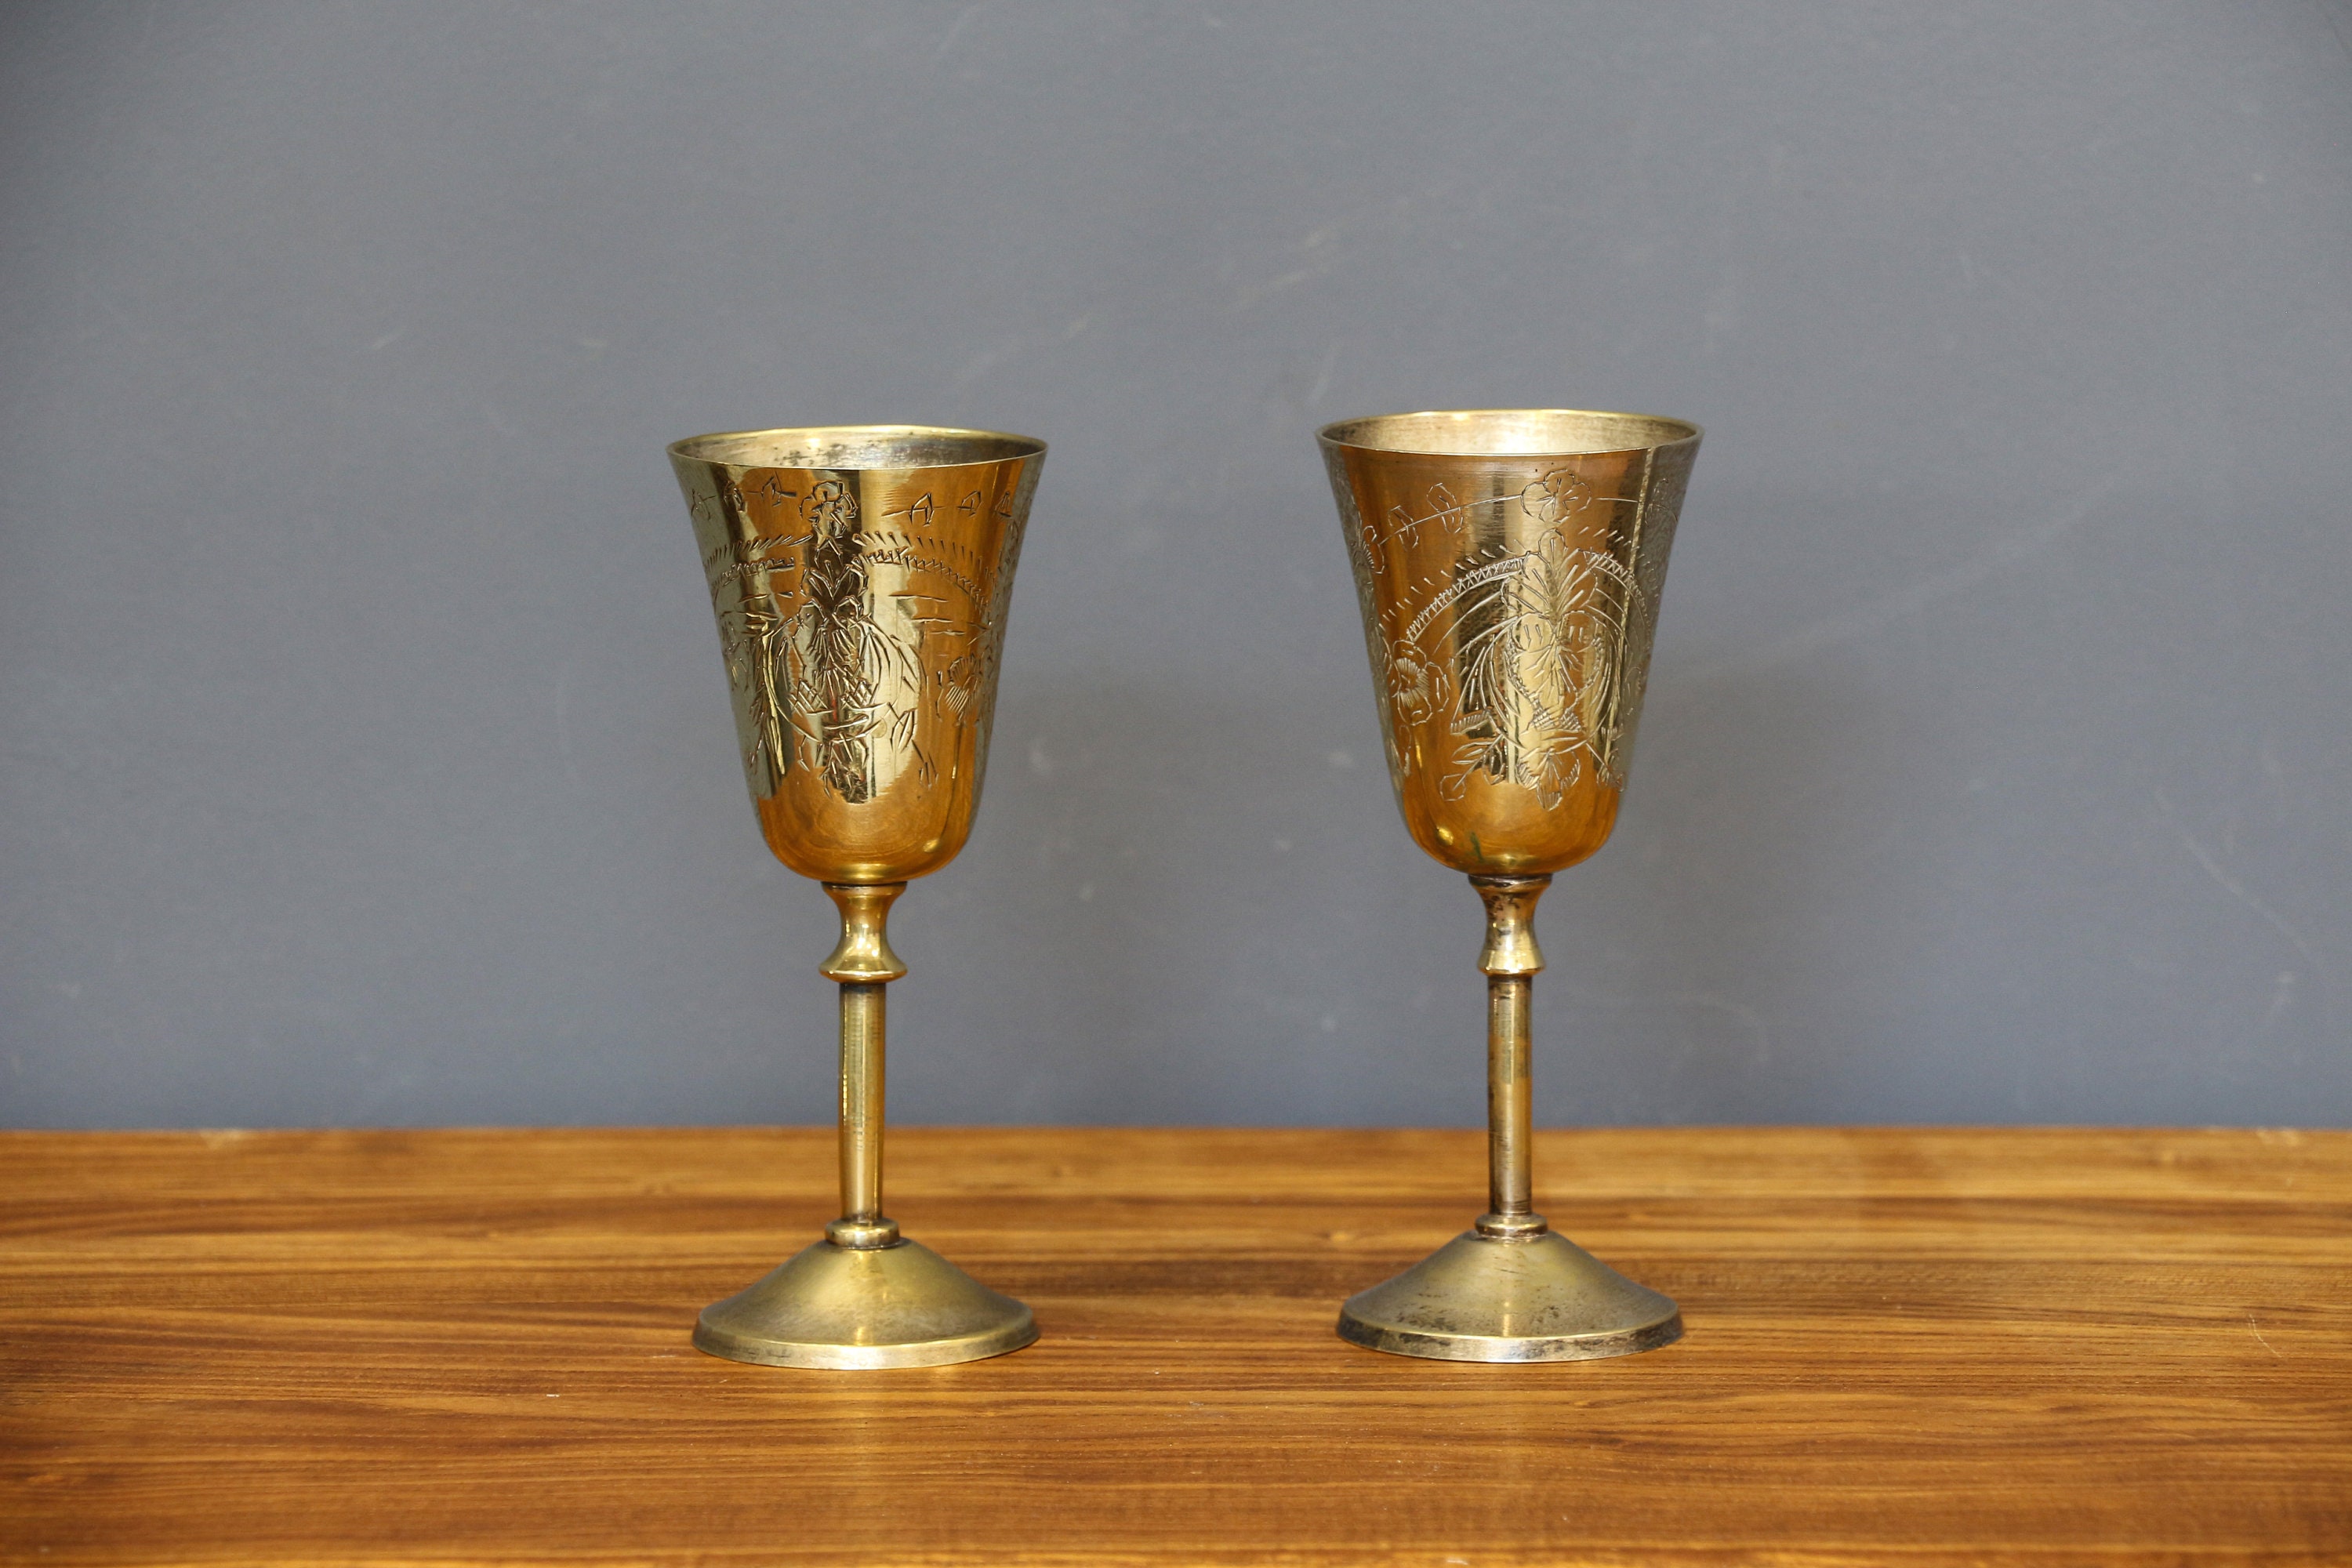 Vintage Brass Wine Goblets Set of 4